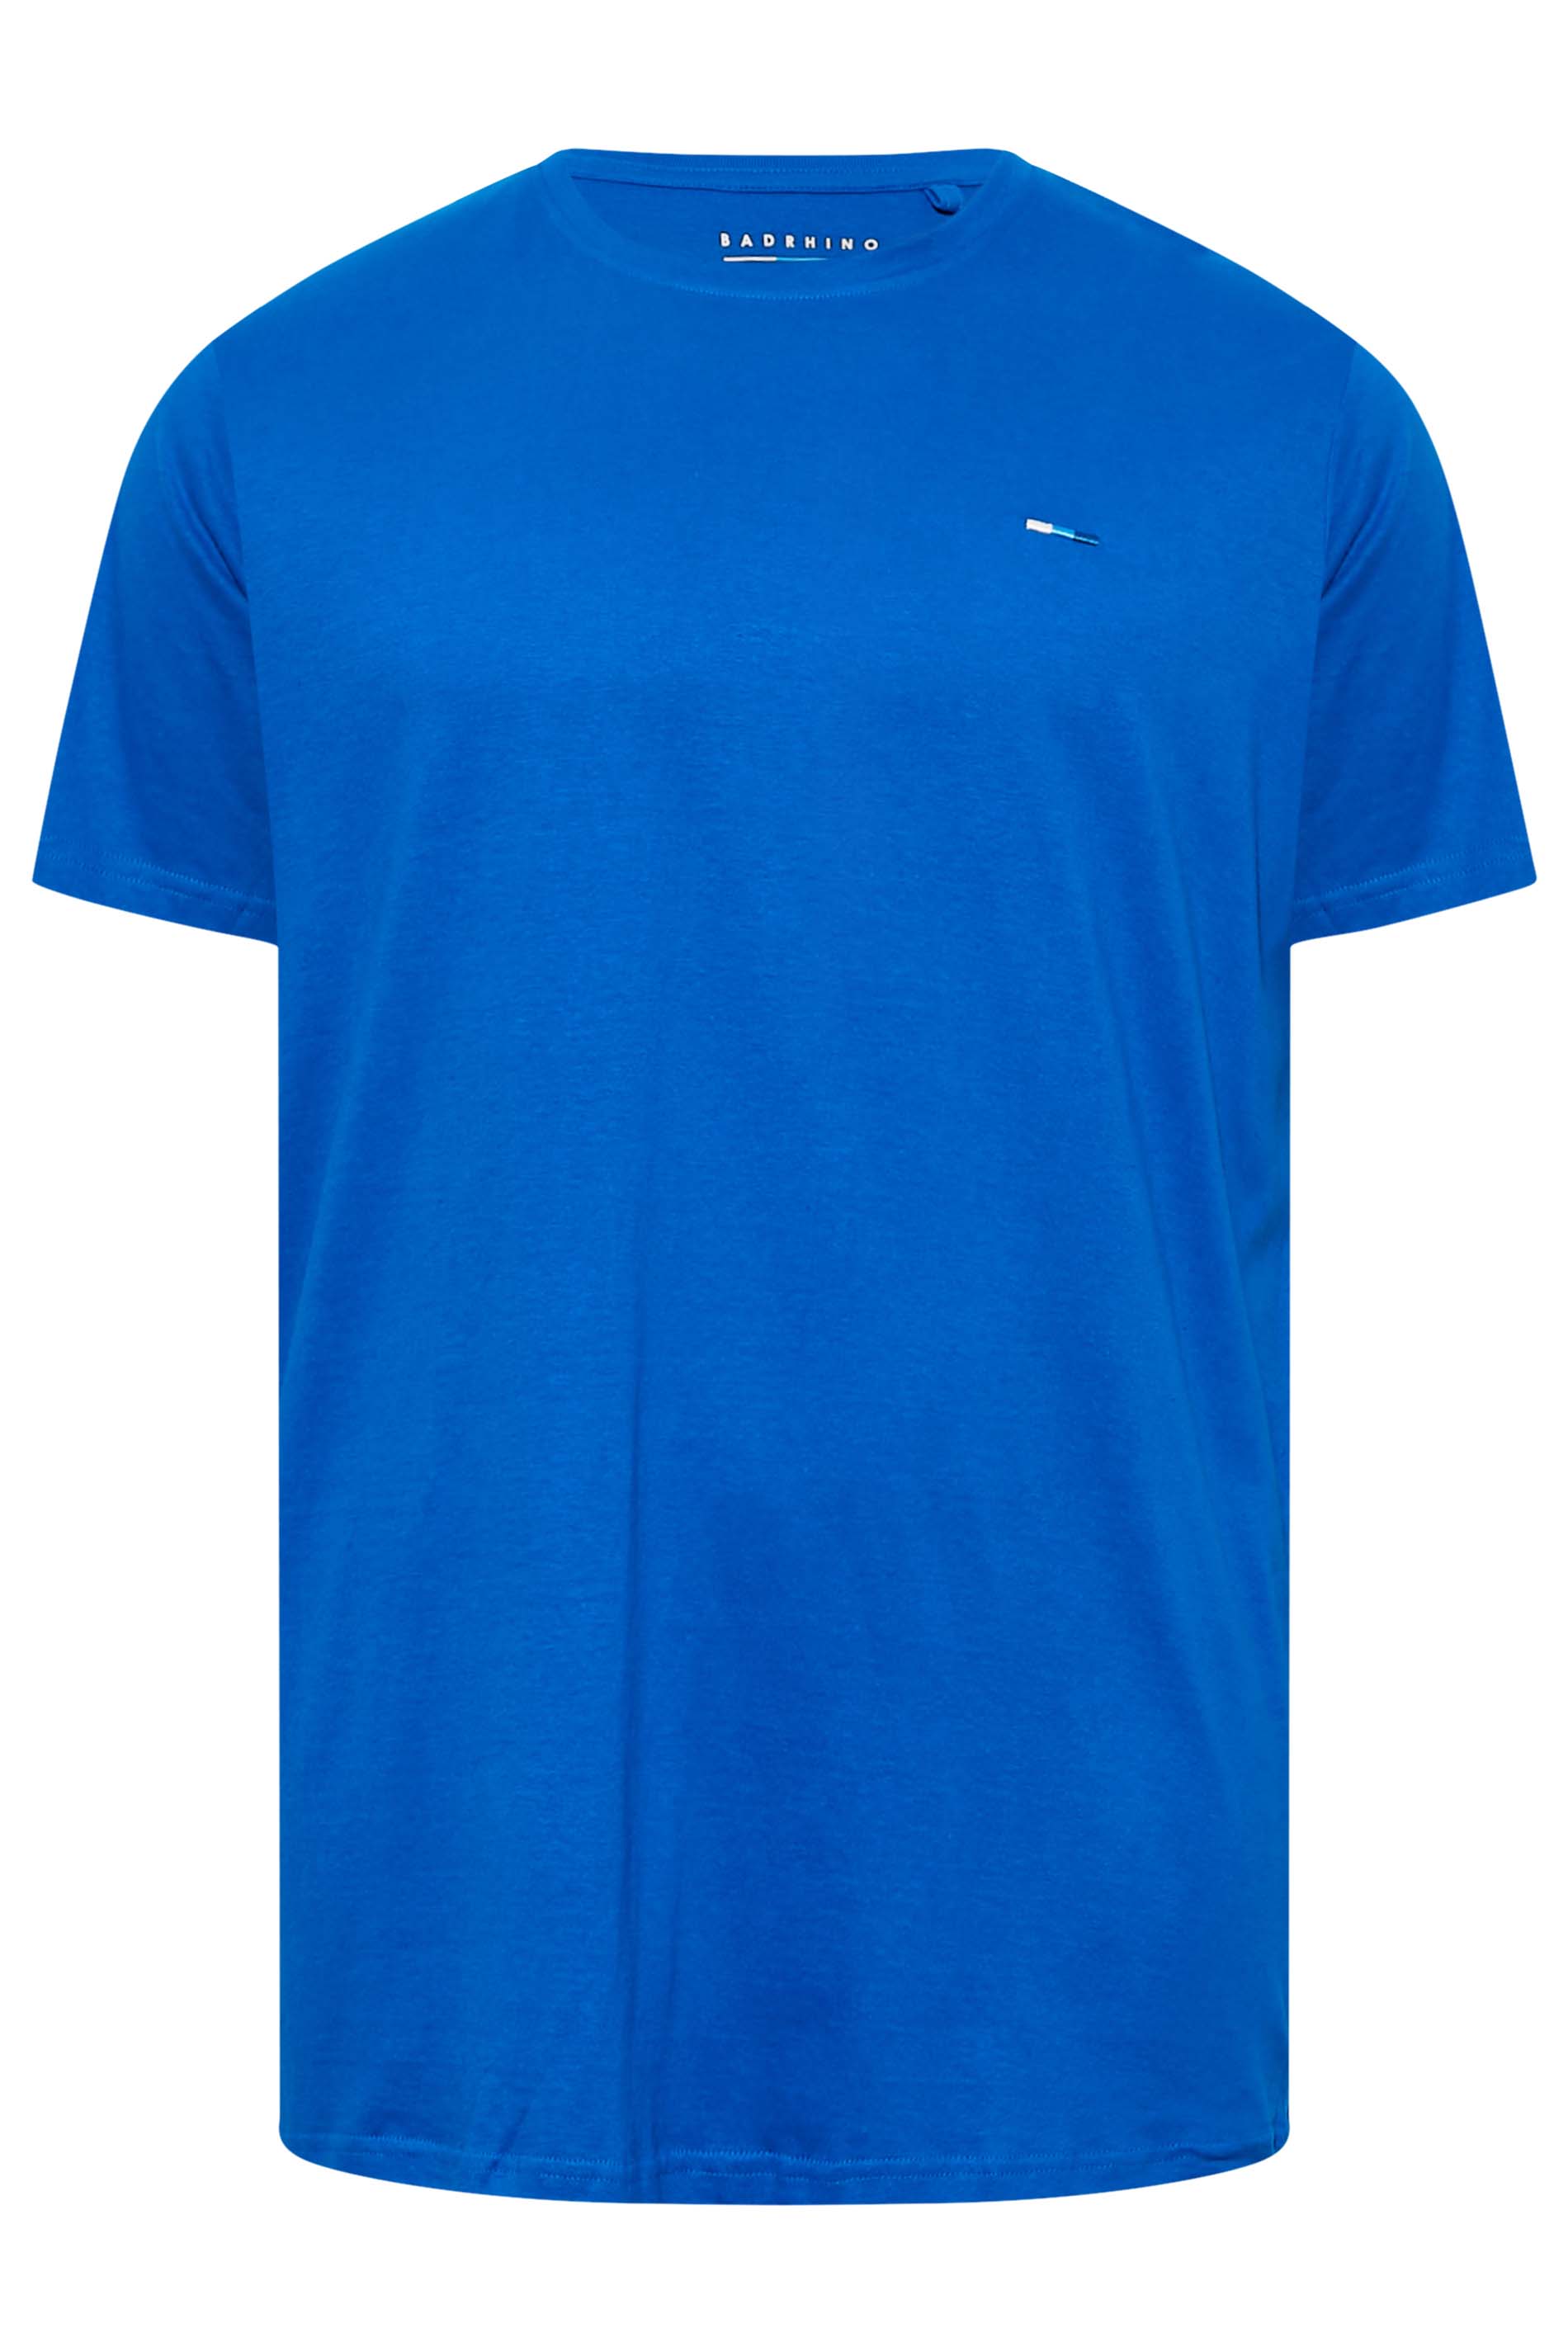 BadRhino Big & Tall Cobalt Blue Core T-Shirt | BadRhino 3